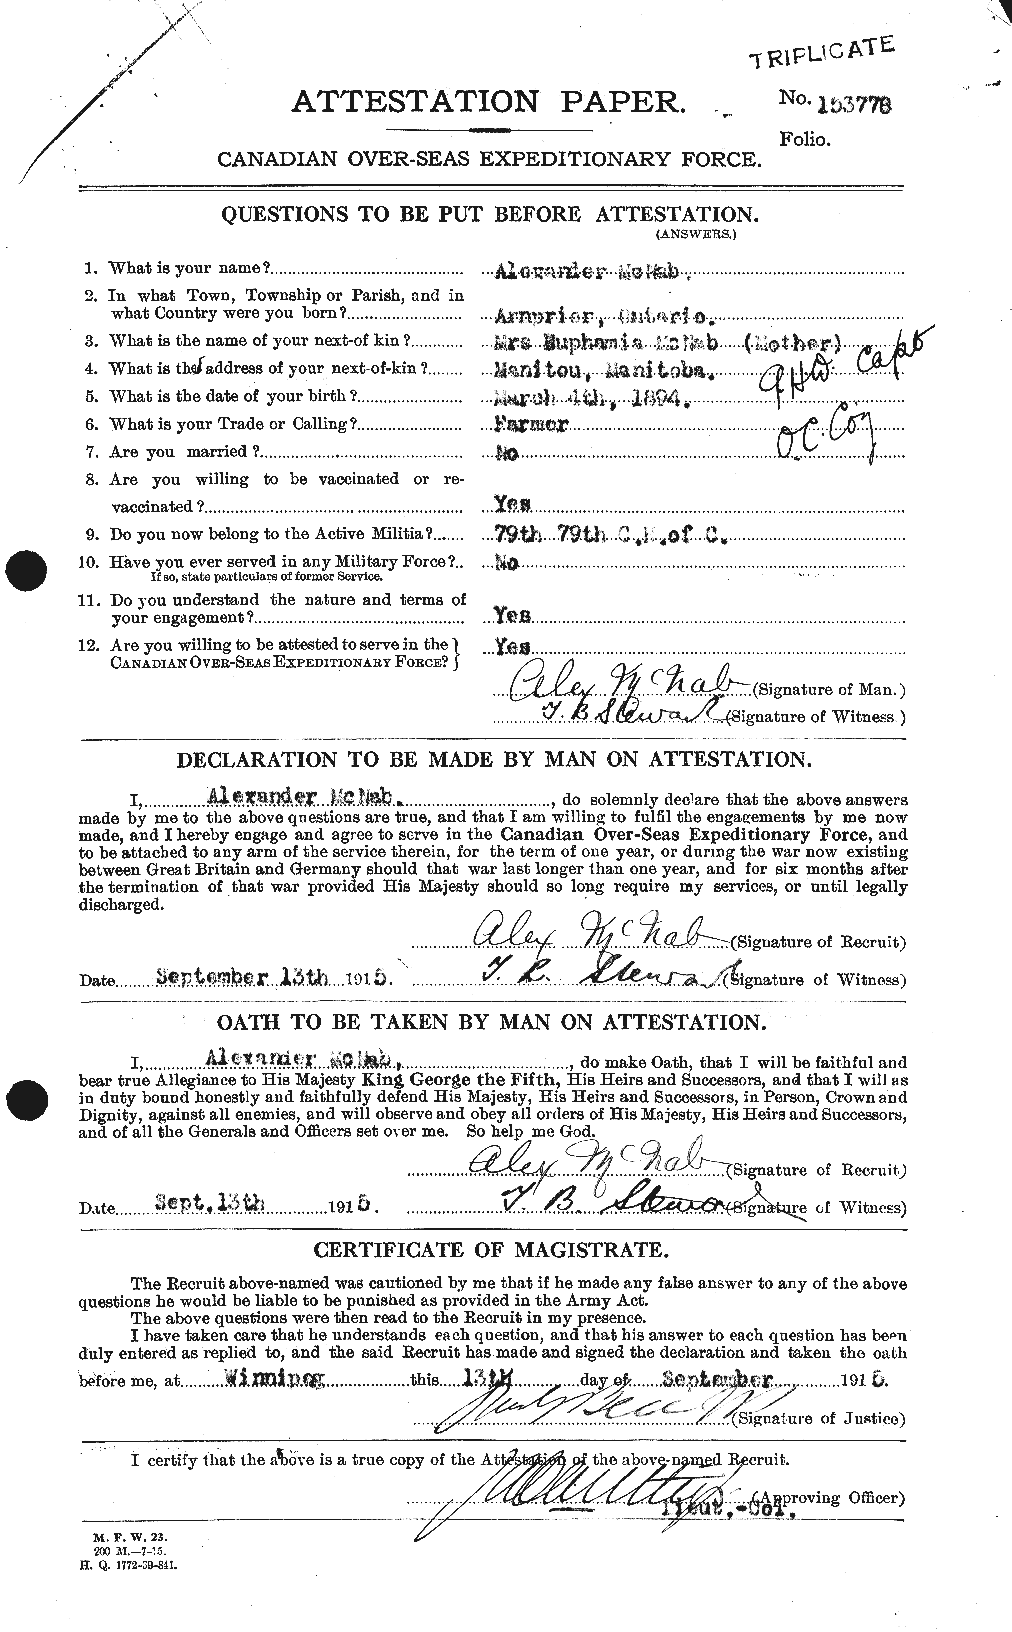 Dossiers du Personnel de la Première Guerre mondiale - CEC 539509a